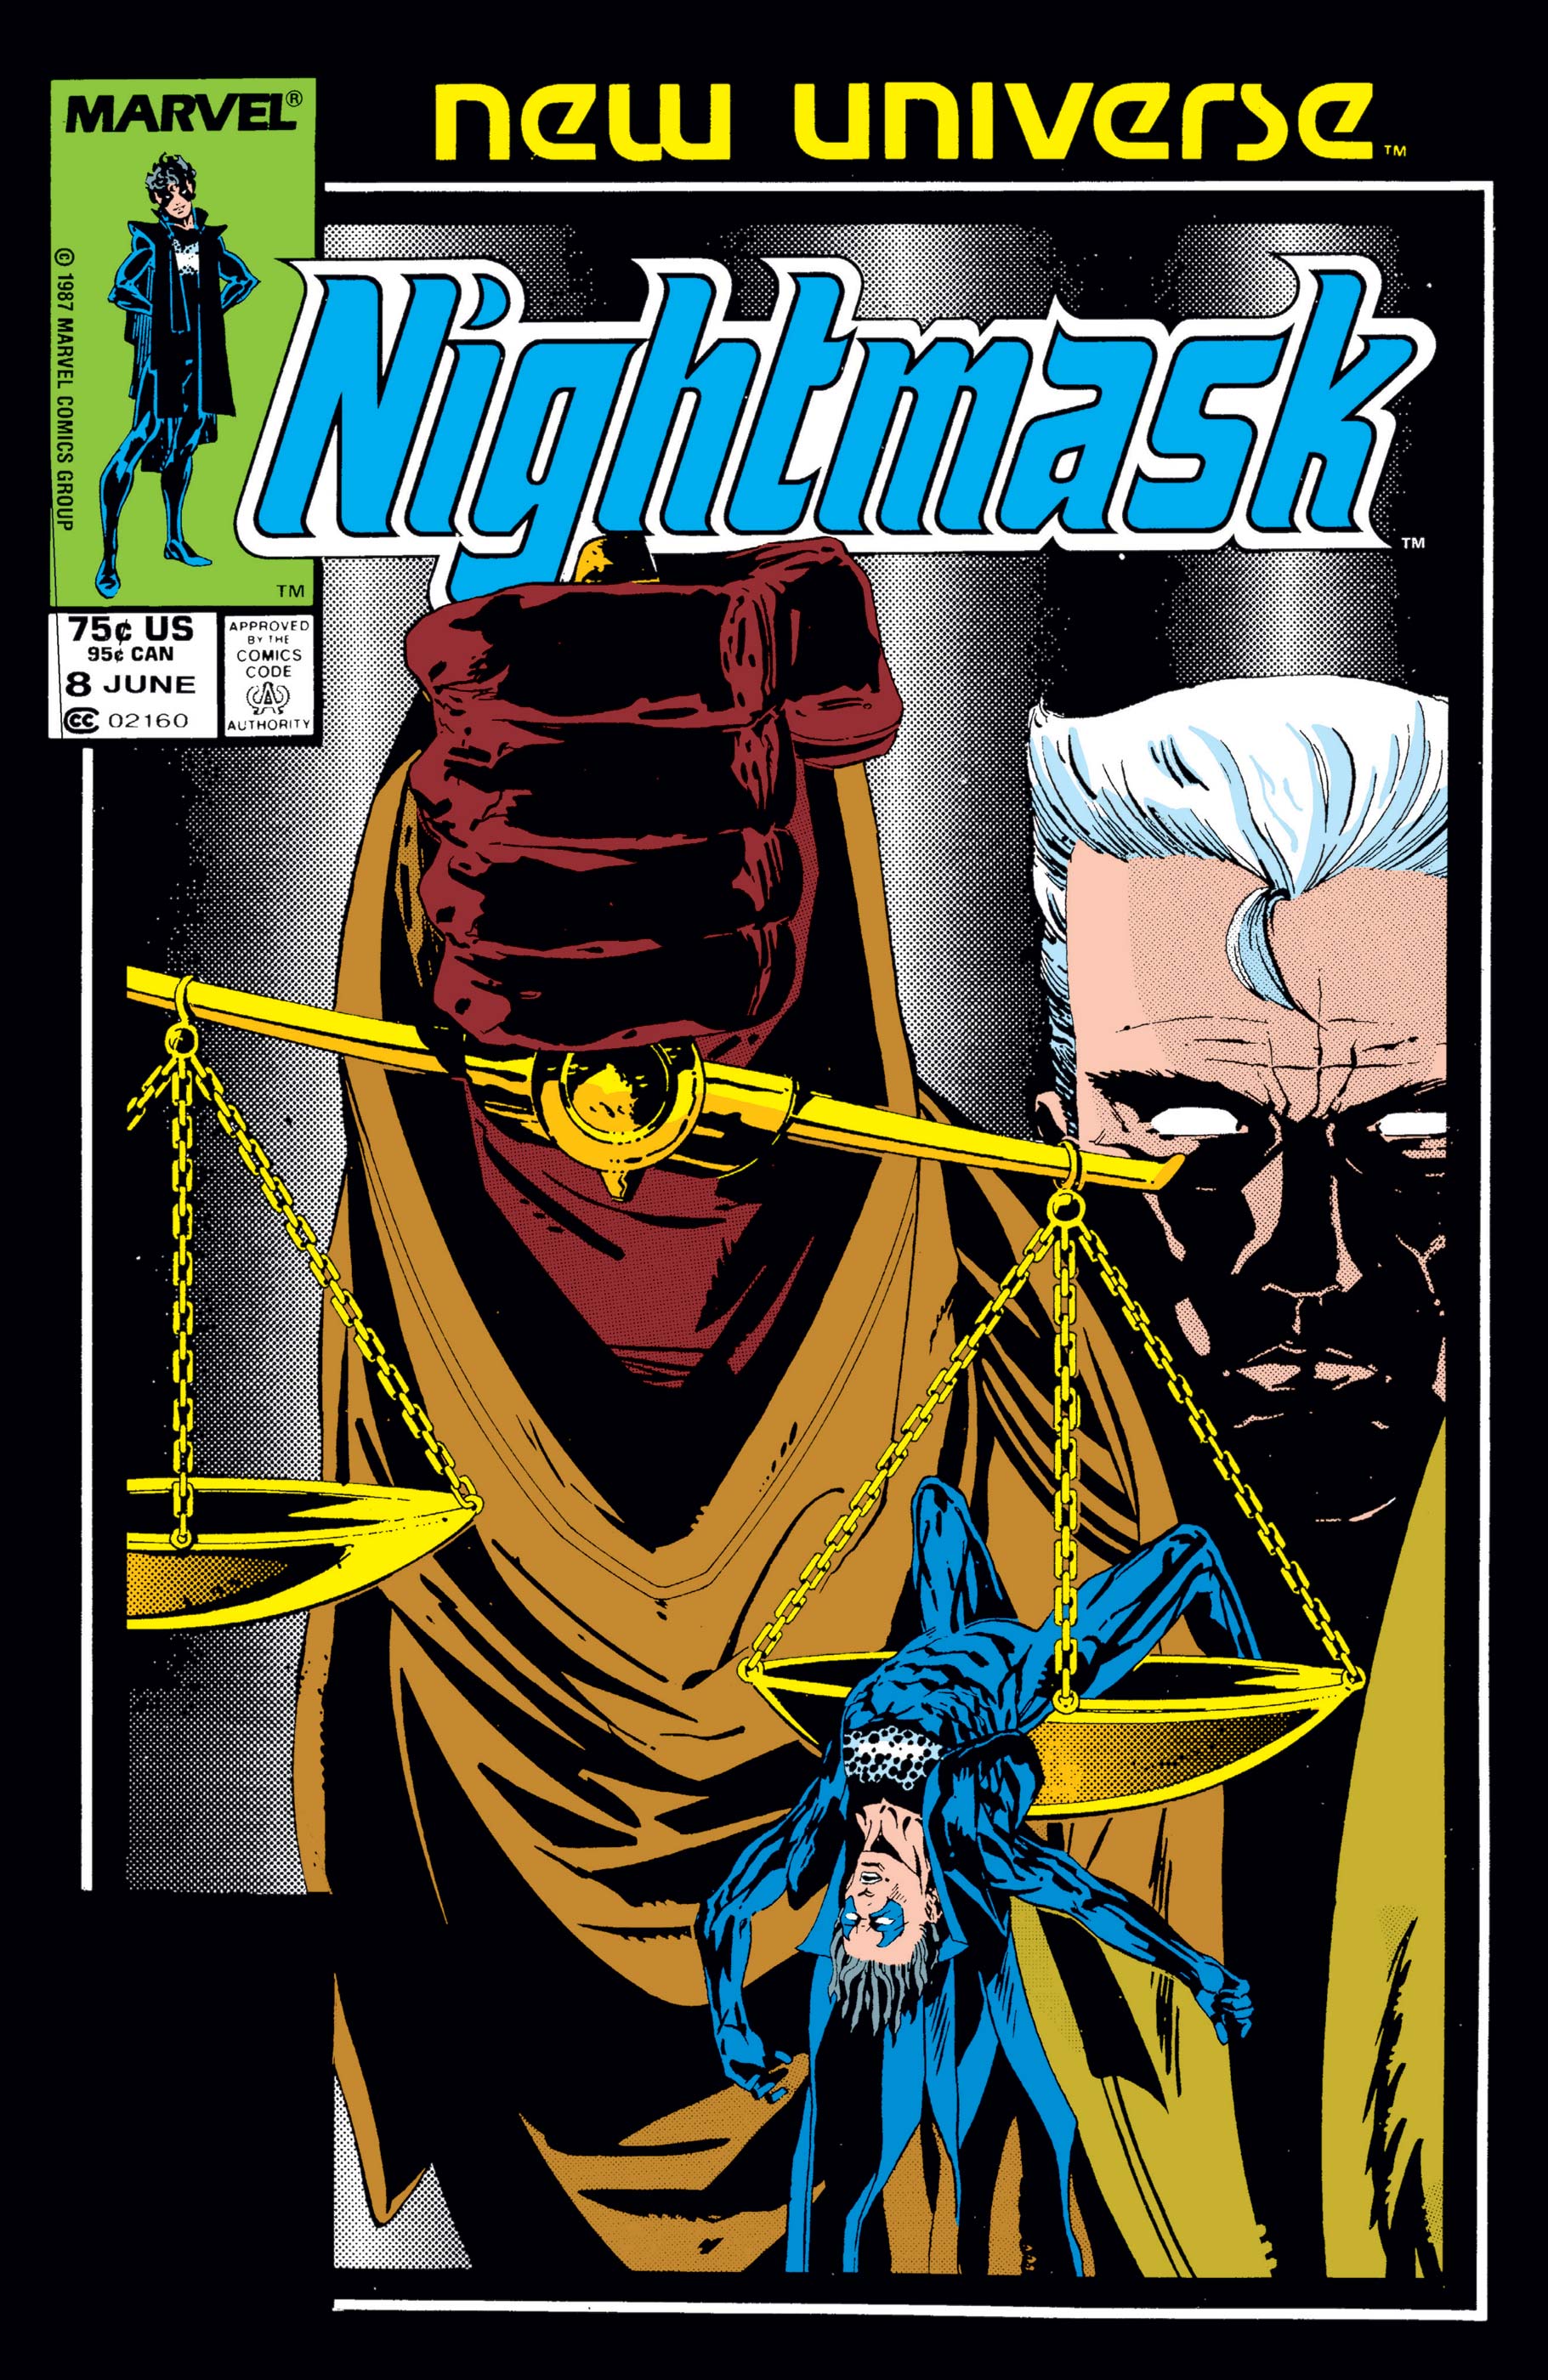 Nightmask (1986) #8